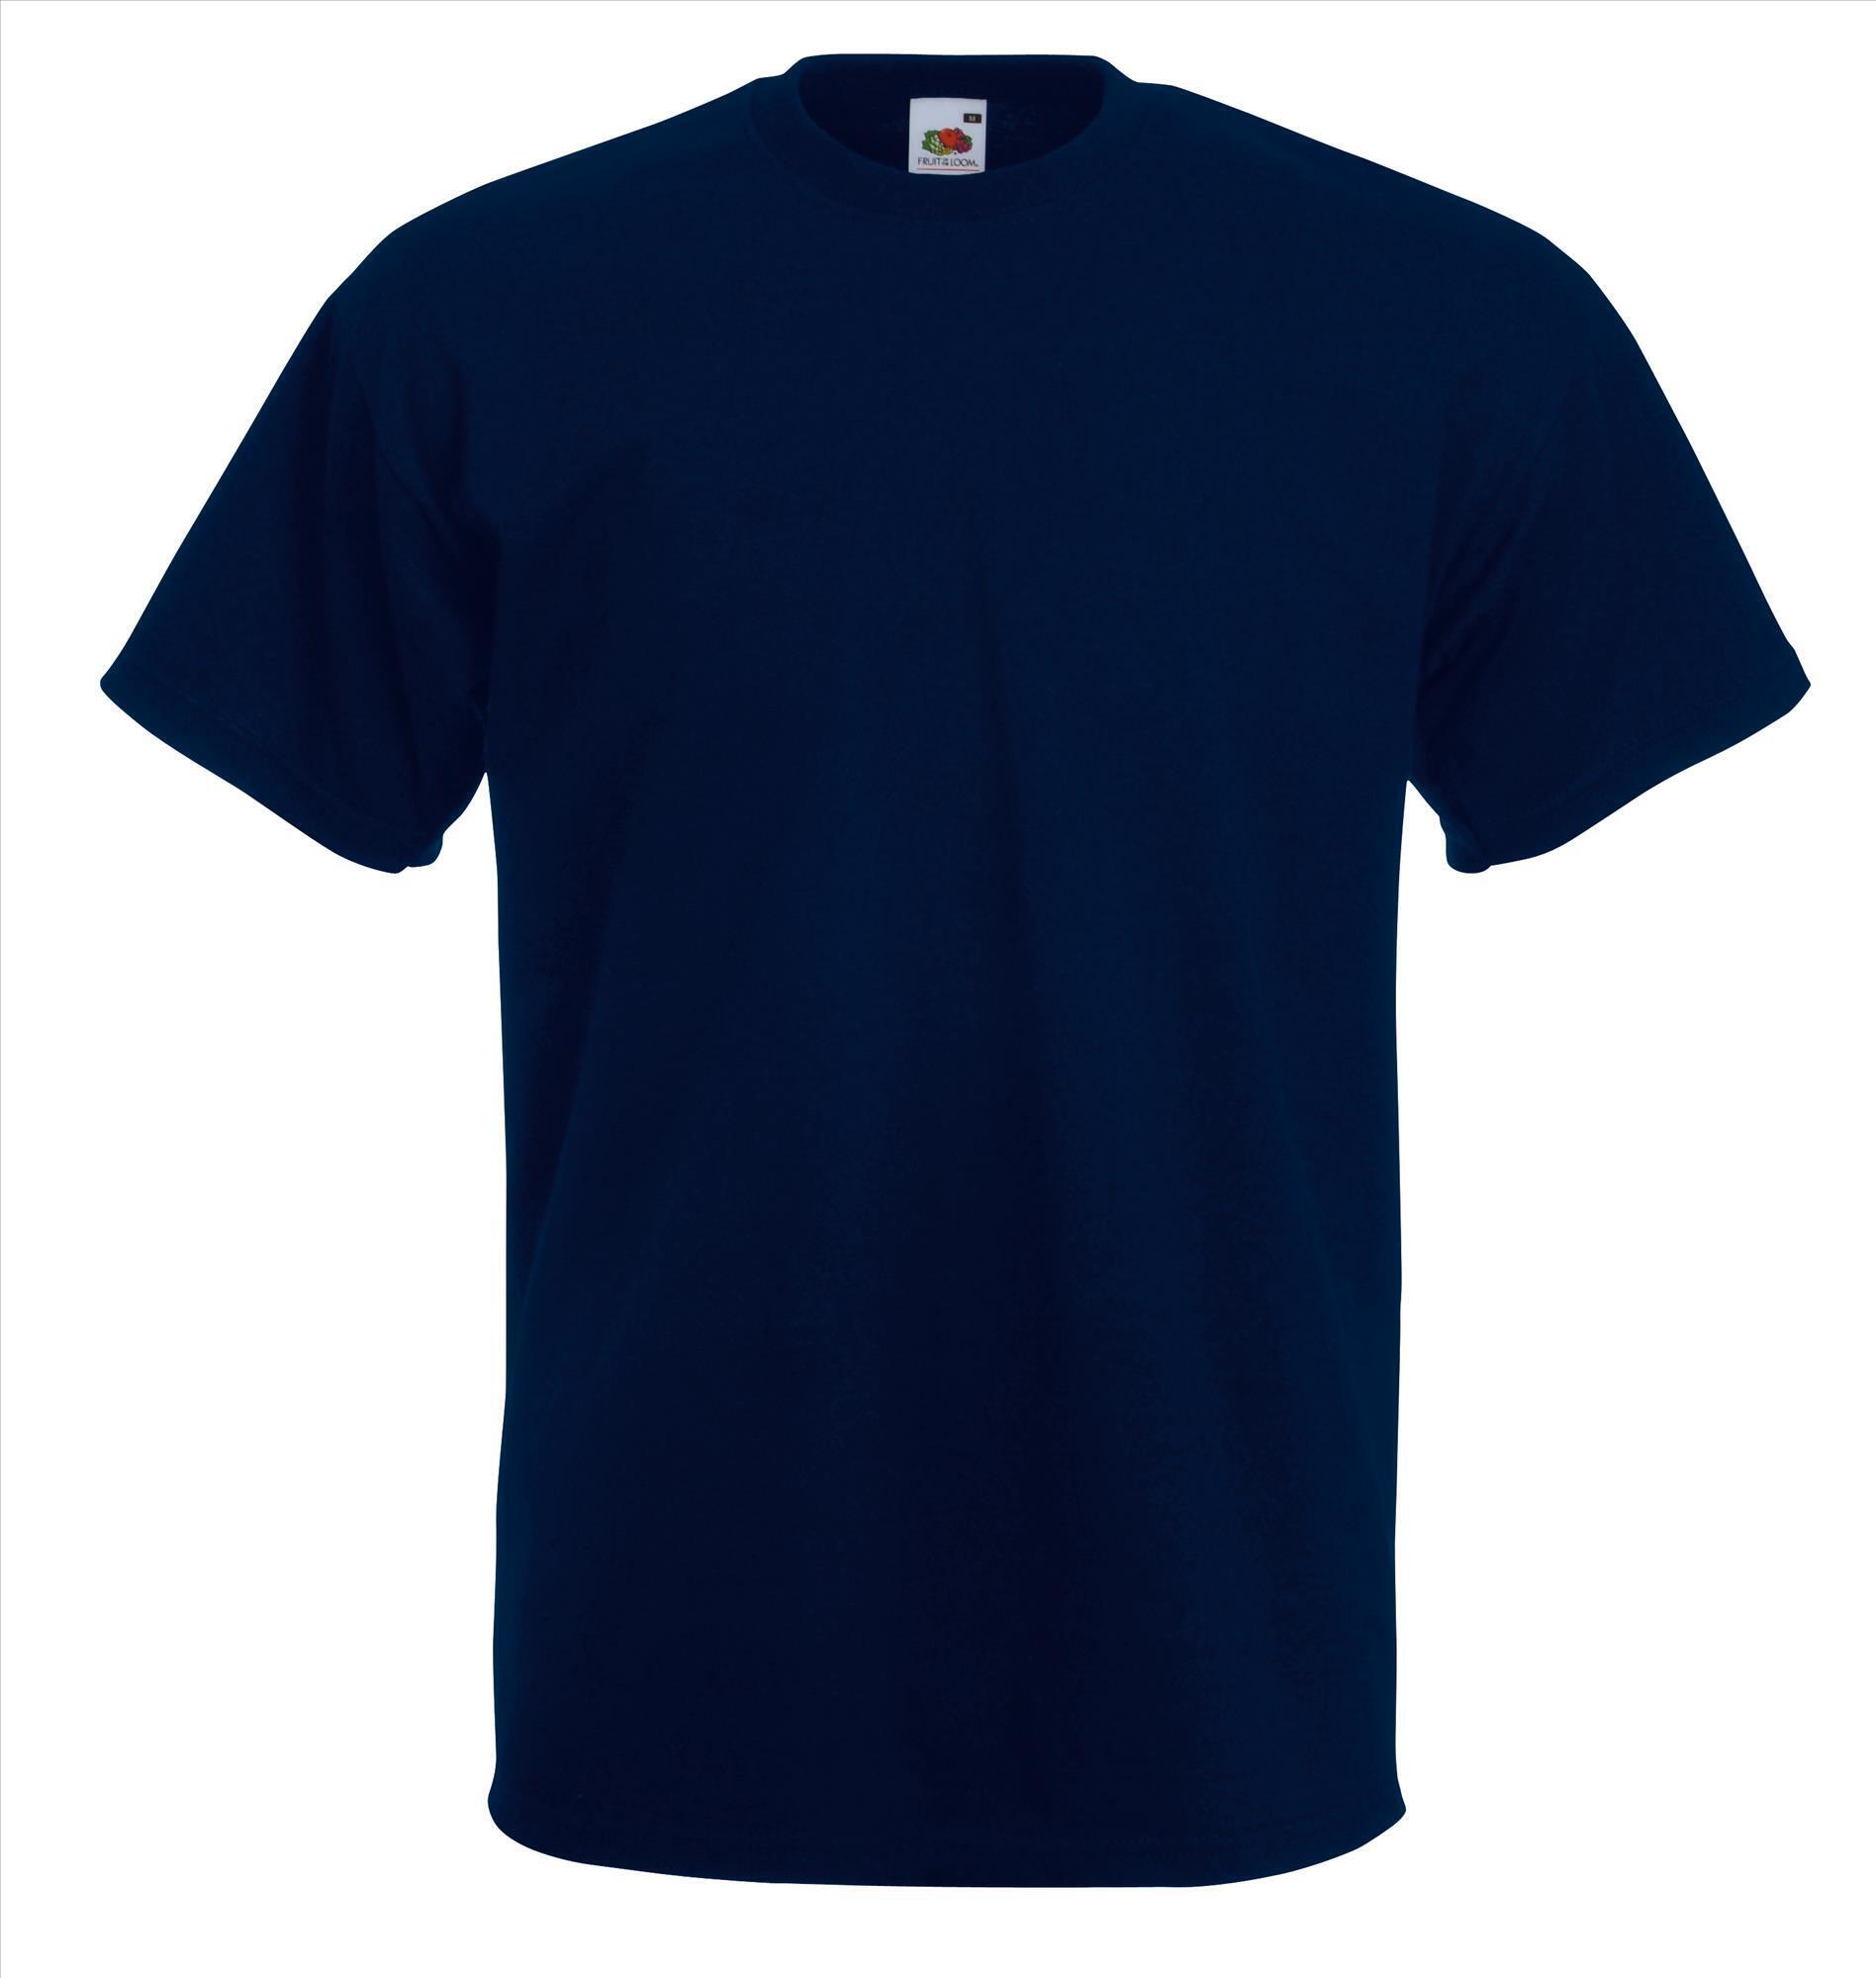 Dik gebreide T-shirt diep Marine blauw voor mannen ronde hals te personaliseren